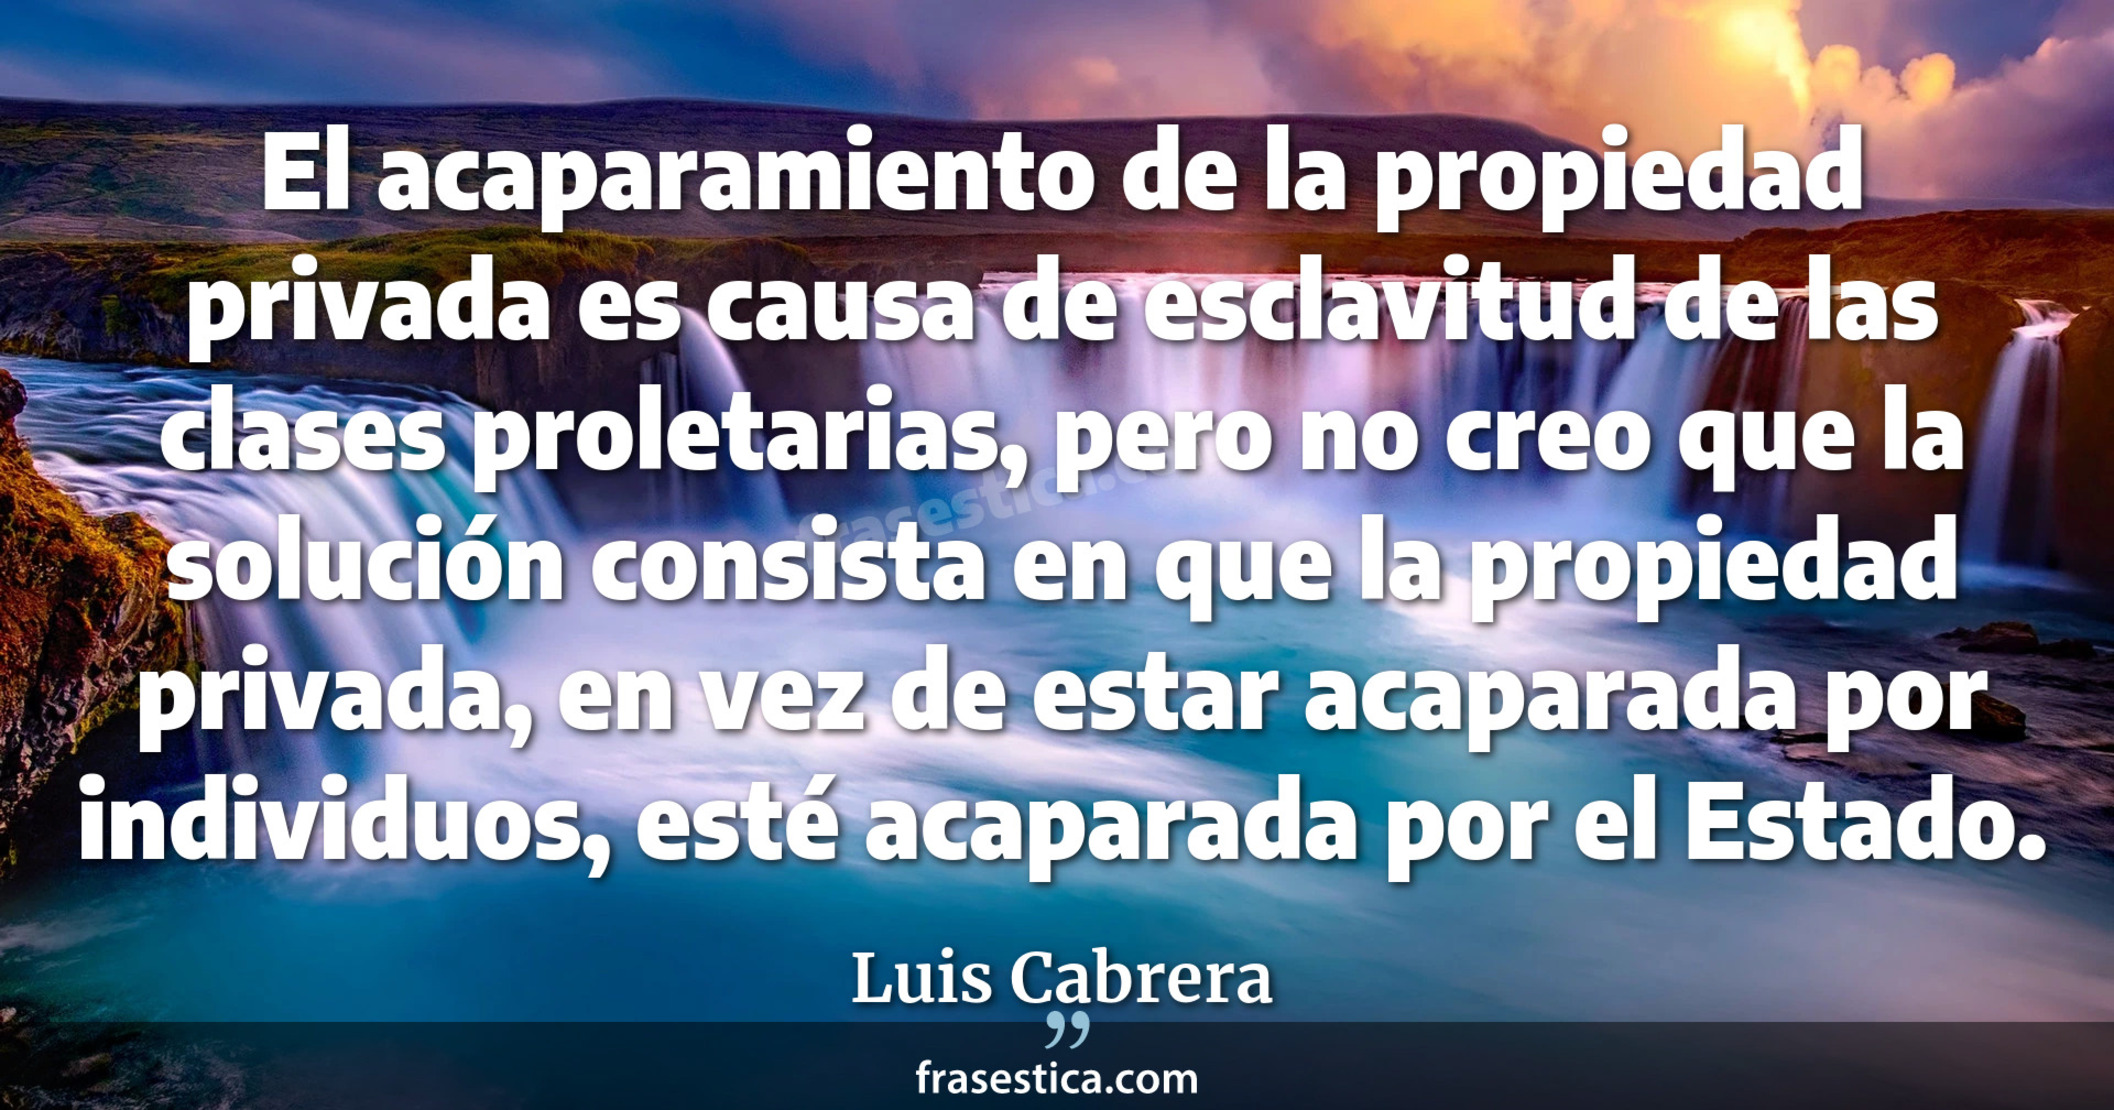 El acaparamiento de la propiedad privada es causa de esclavitud de las clases proletarias, pero no creo que la solución consista en que la propiedad privada, en vez de estar acaparada por individuos, esté acaparada por el Estado. - Luis Cabrera